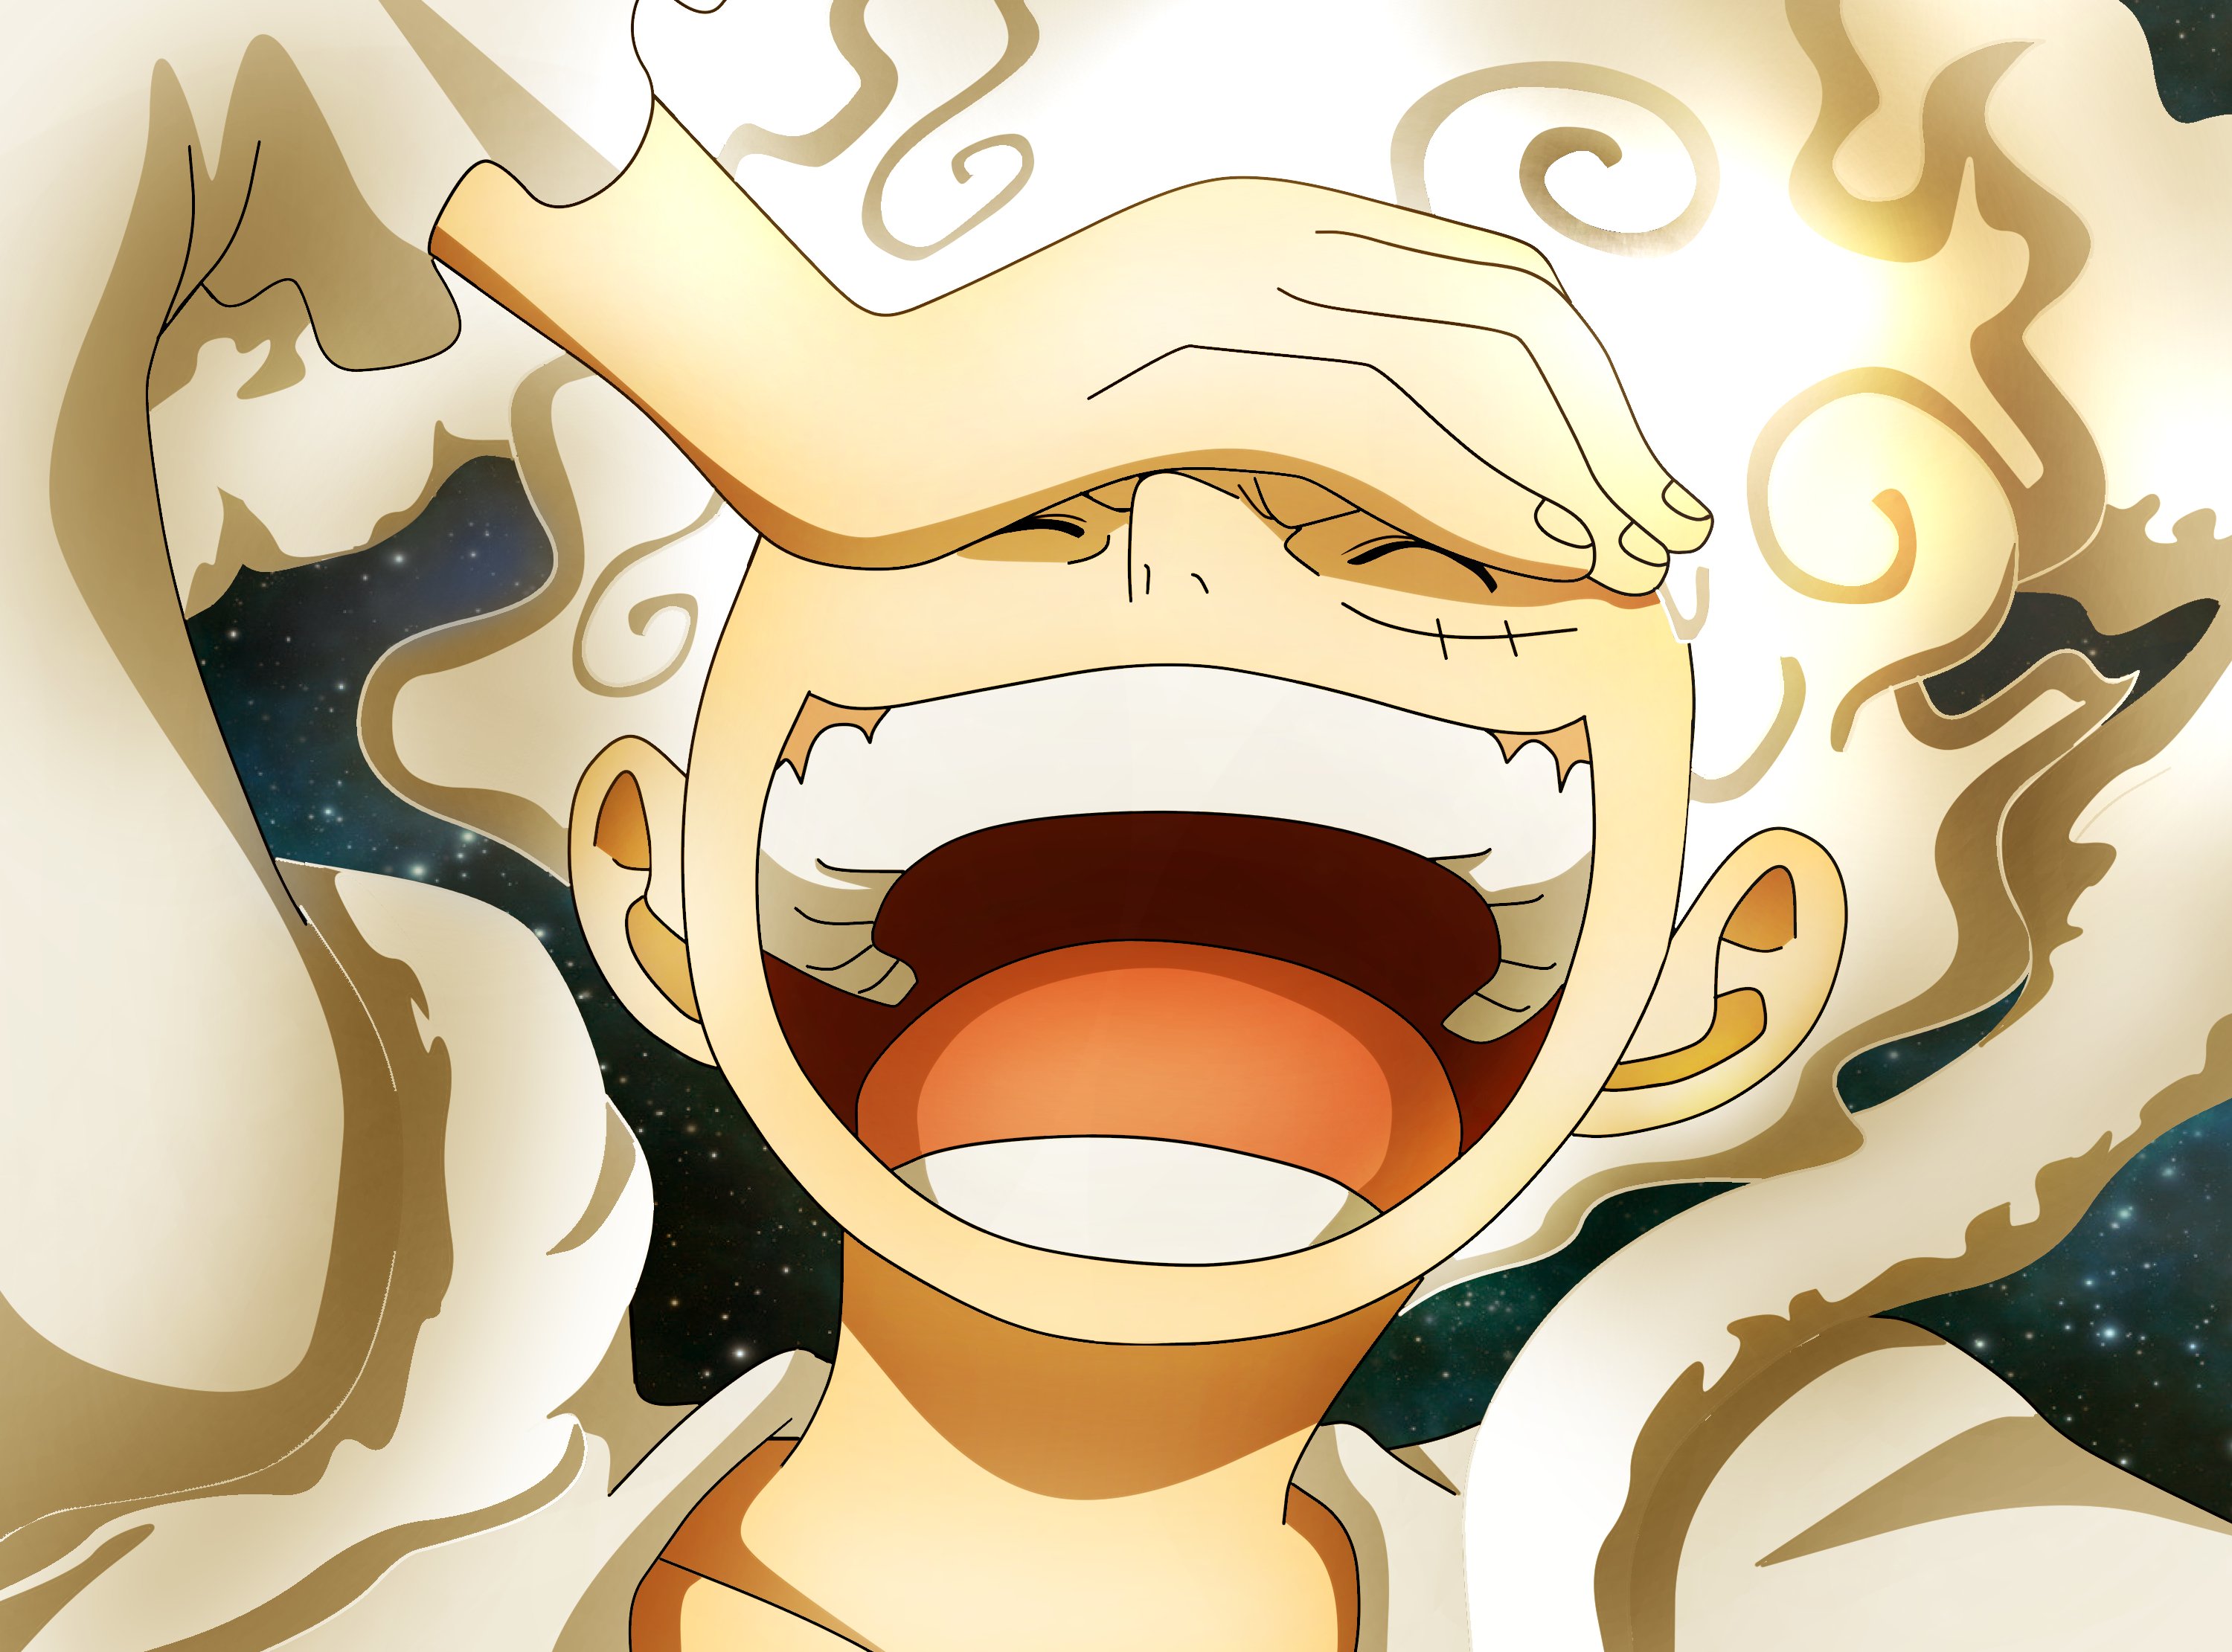 One Piece  Monkey D Luffy Gear 5 Awakening Rubber Body HD wallpaper  download